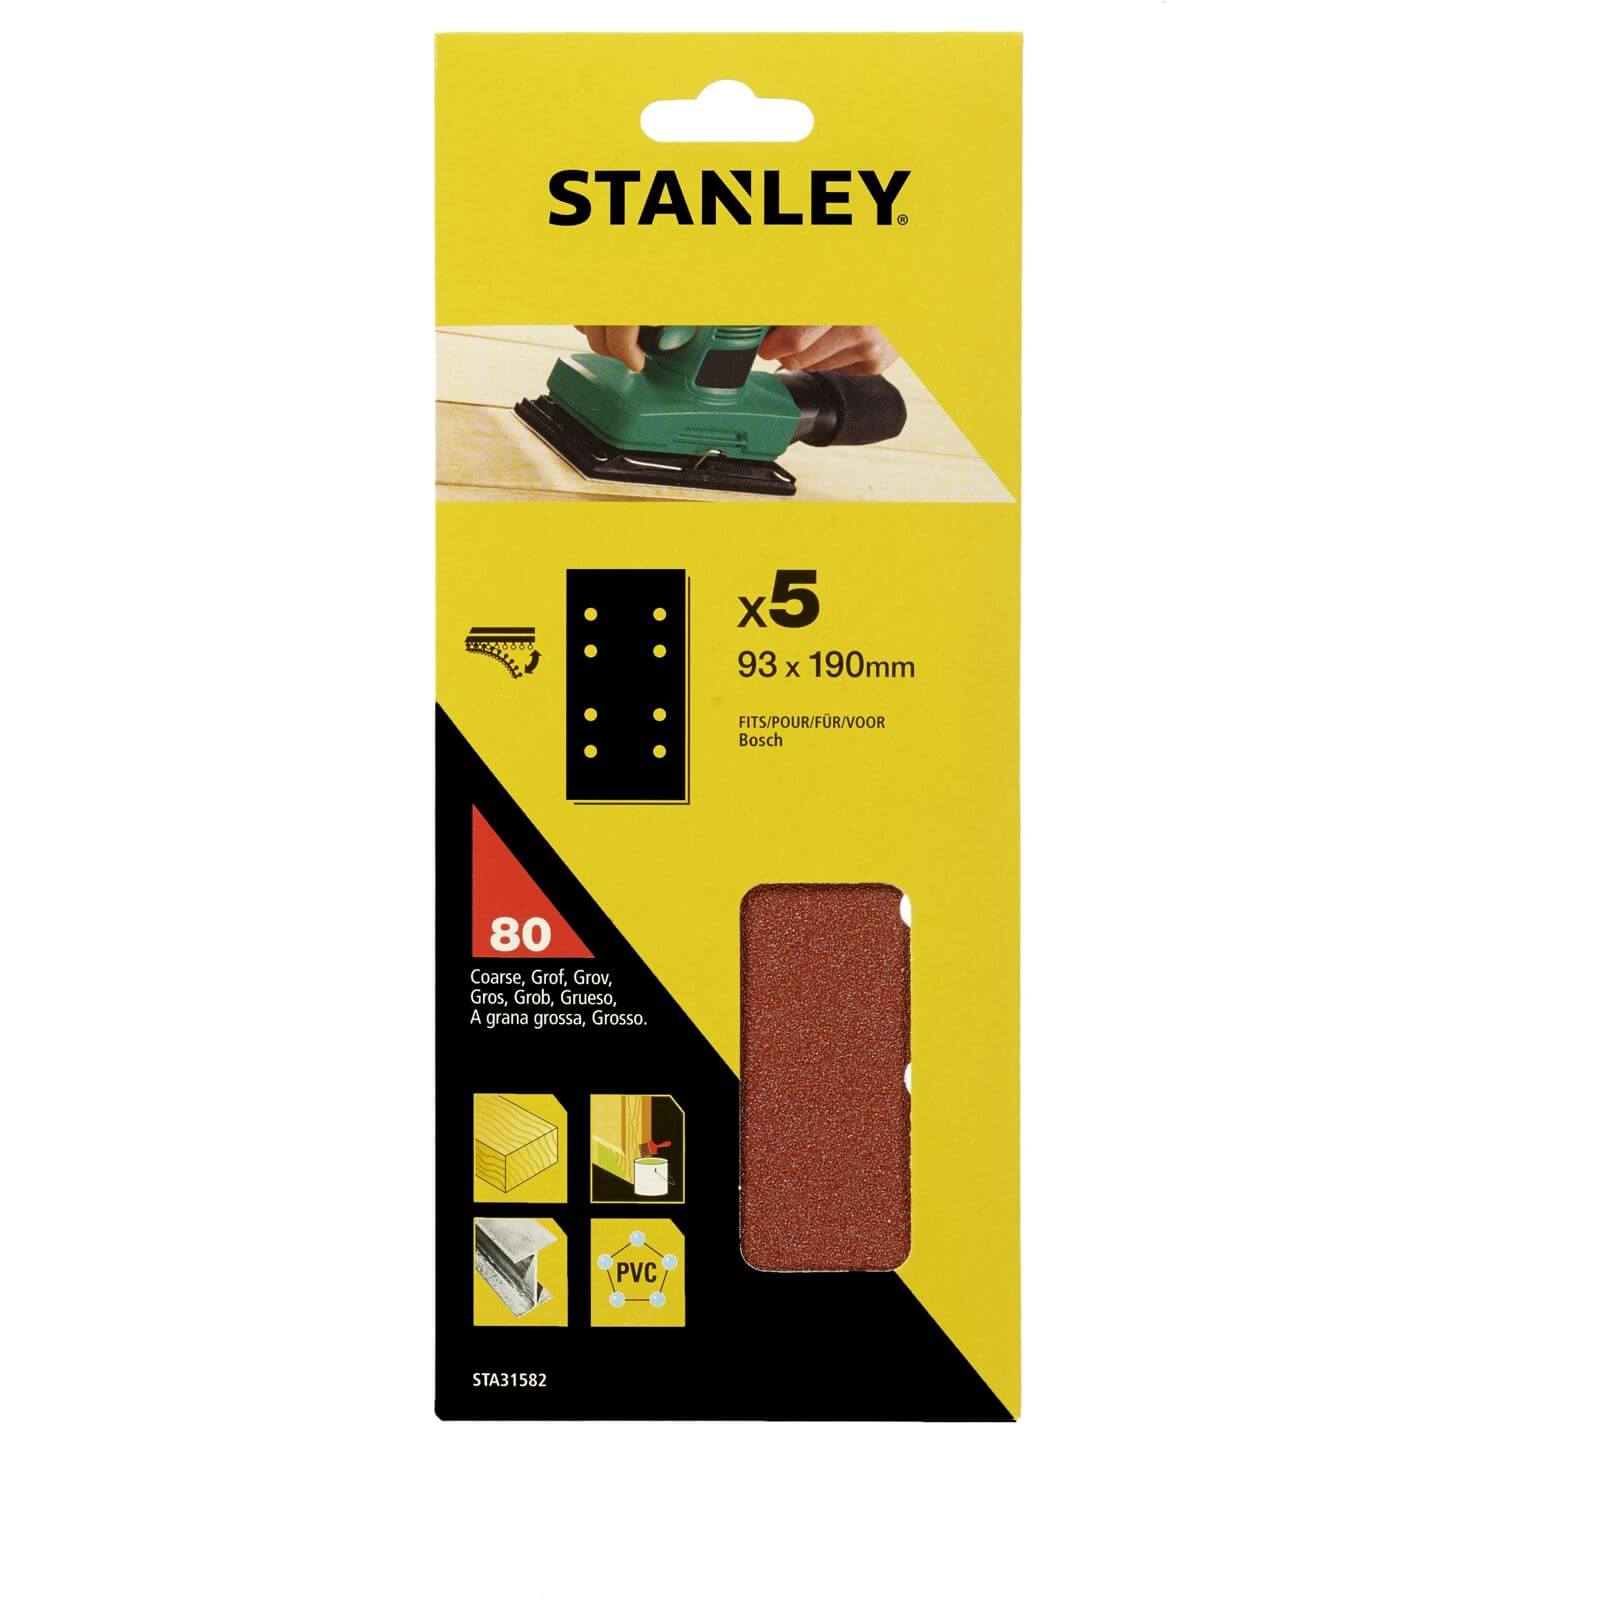 Photo of Stanley 1/3 Sheet Sander 80g Hook & Loop Sanding Sheets - Sta31582-xj